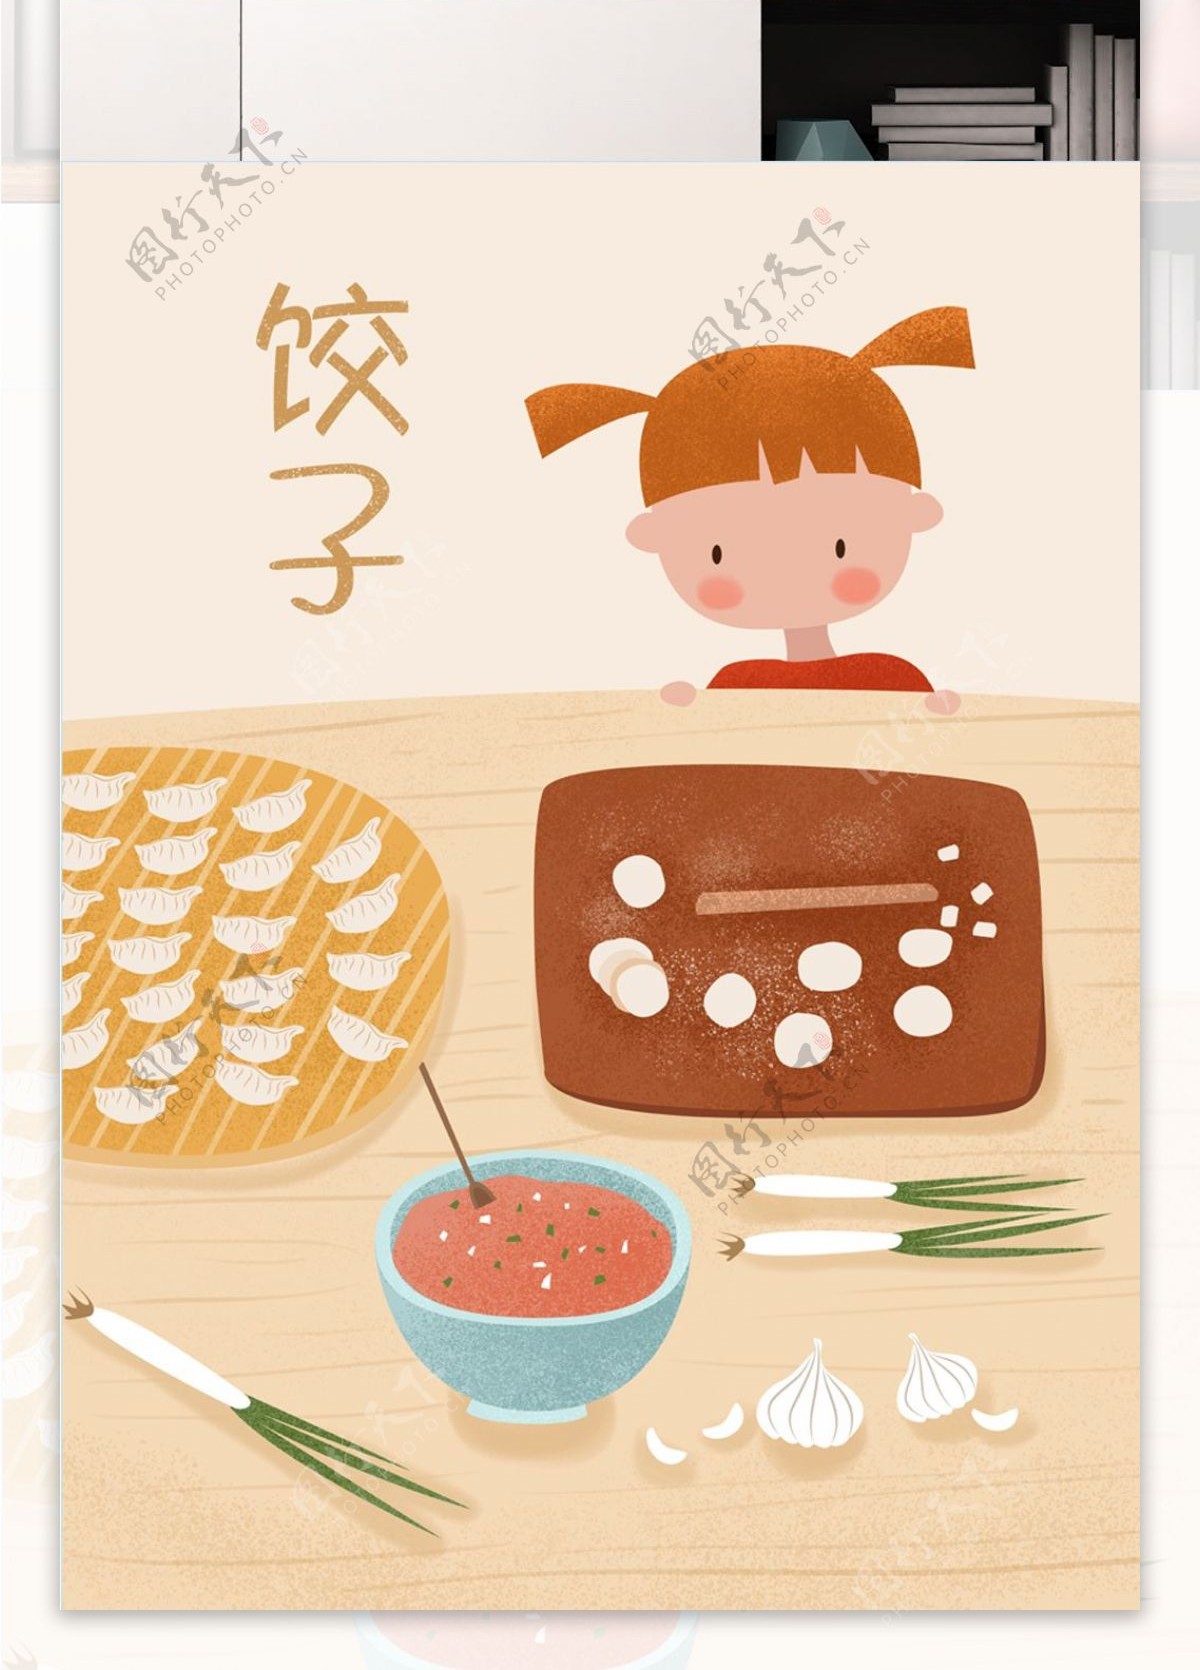 中国传统美食清新饺子原创插画海报